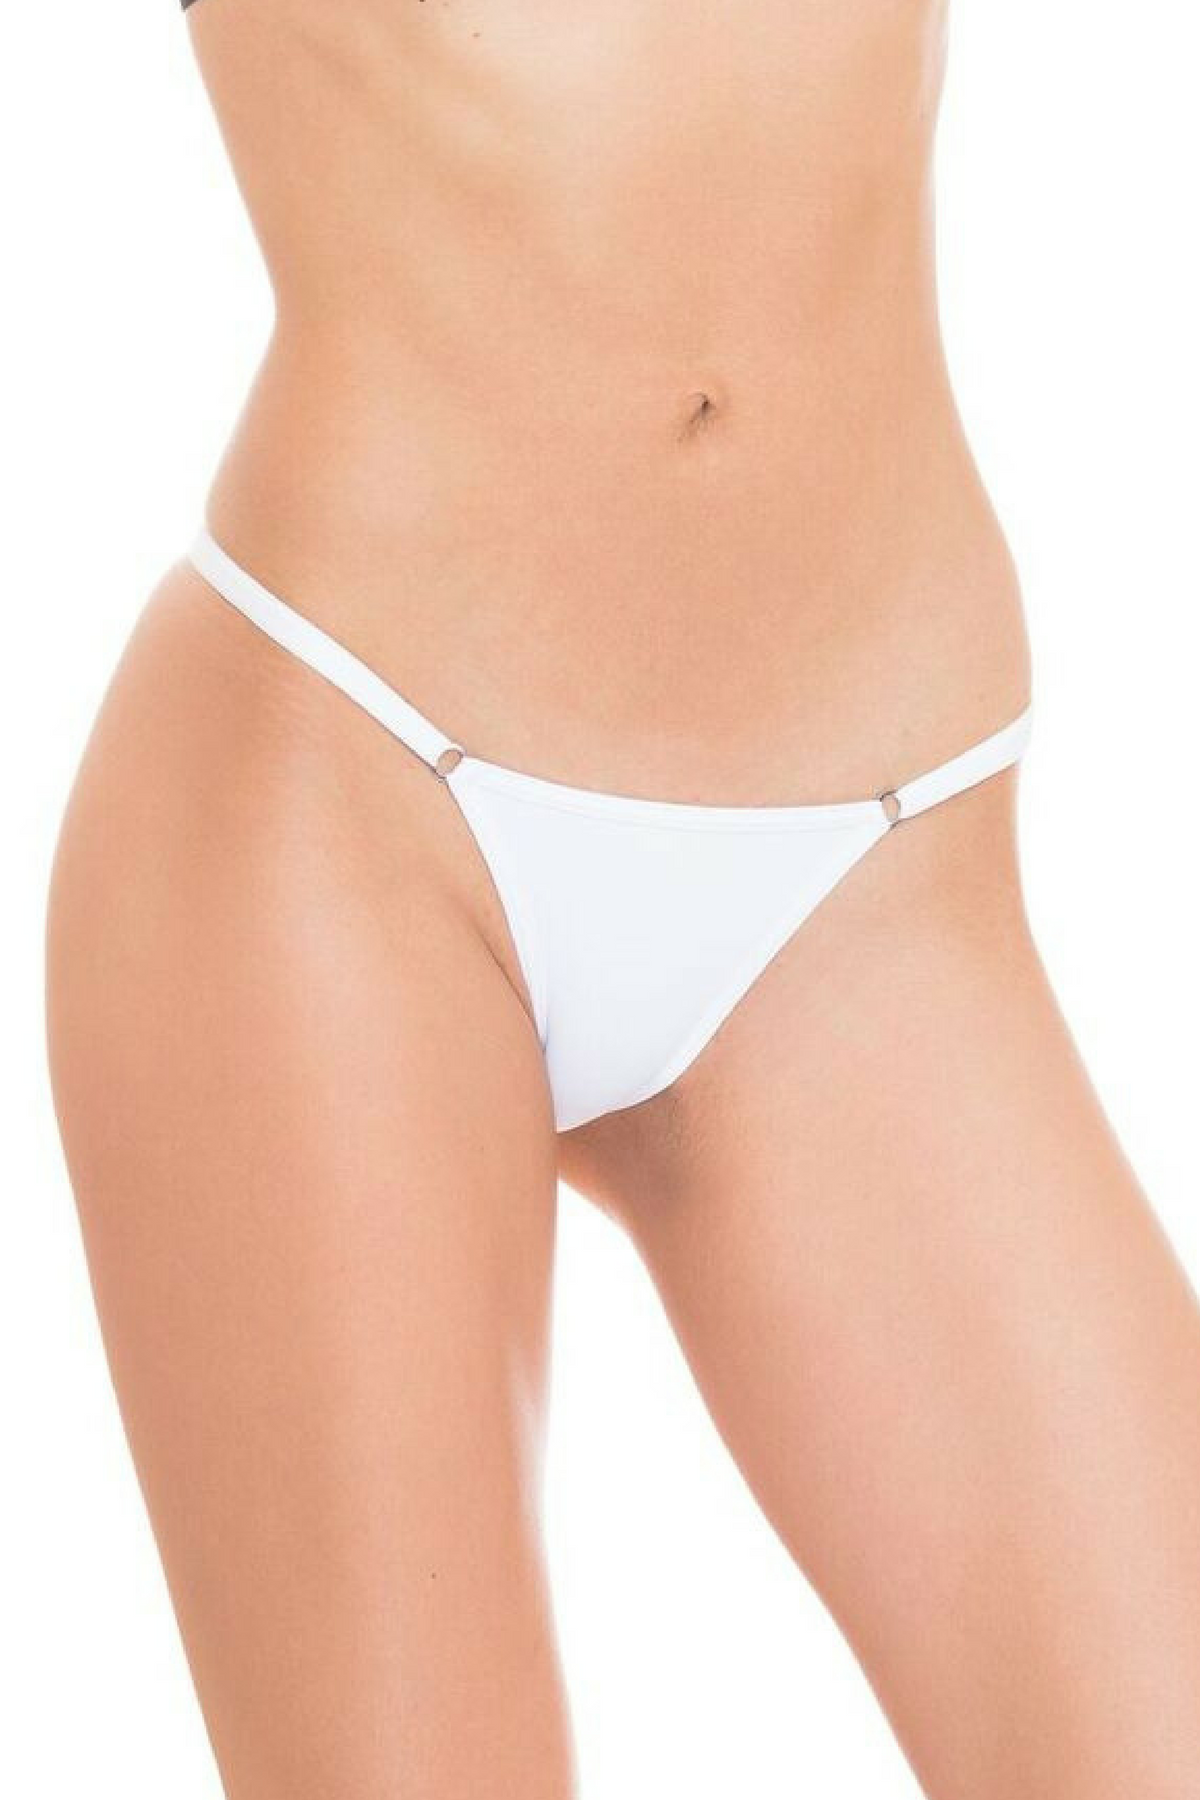 white Brazilian string bikini underwear panty